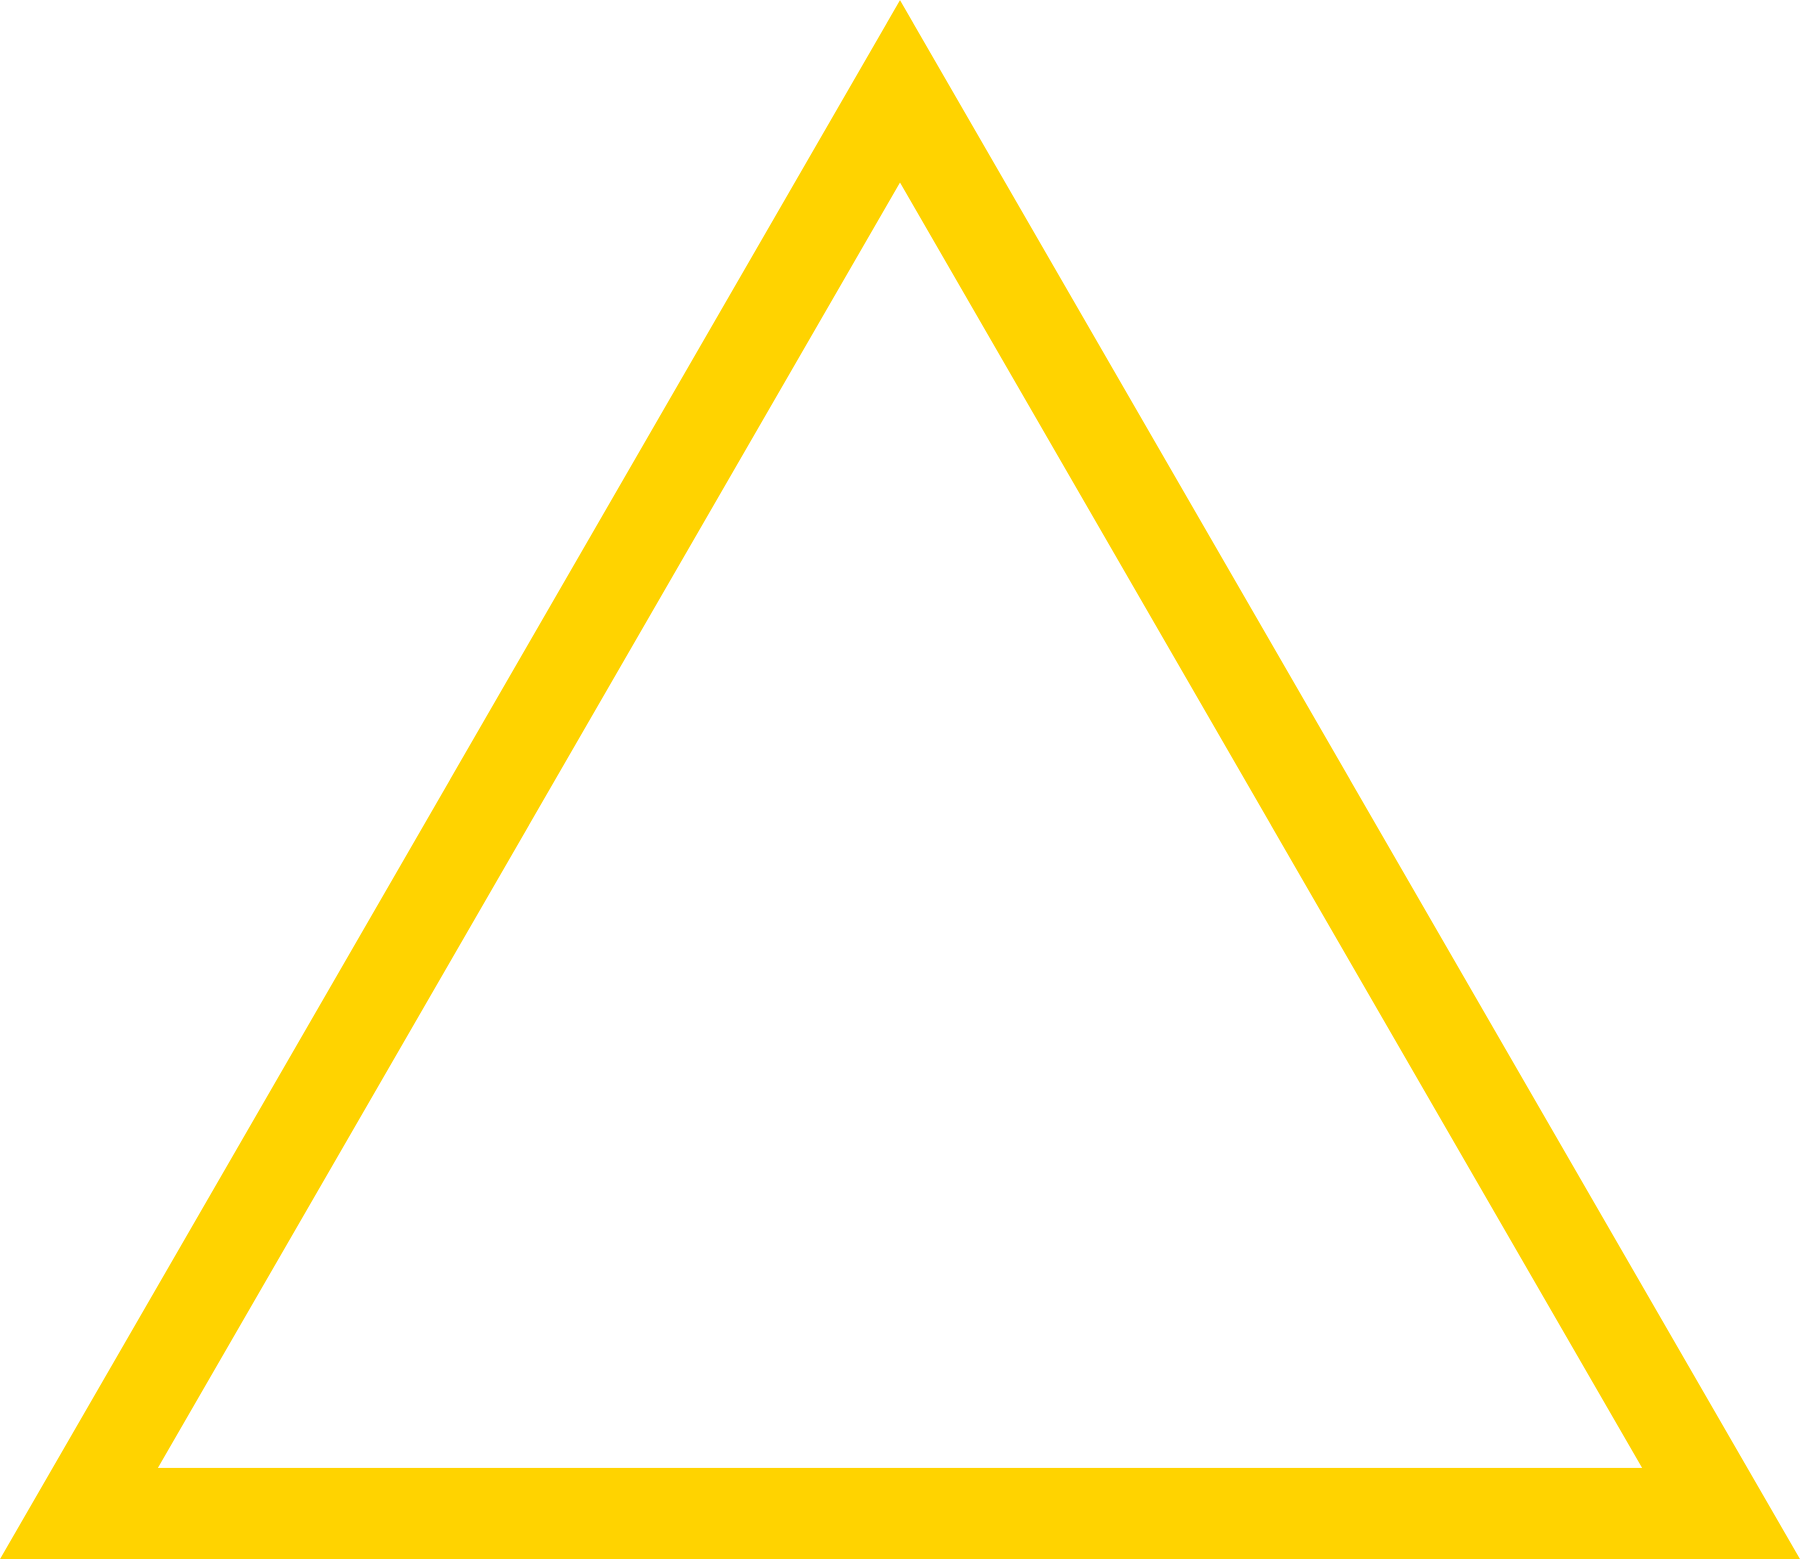 Треугольник в желтом круге. Желтый треугольник. Треугольник желтого цвета. Желтый треугольник на прозрачном фоне. Желтый с белым треугольный знак.